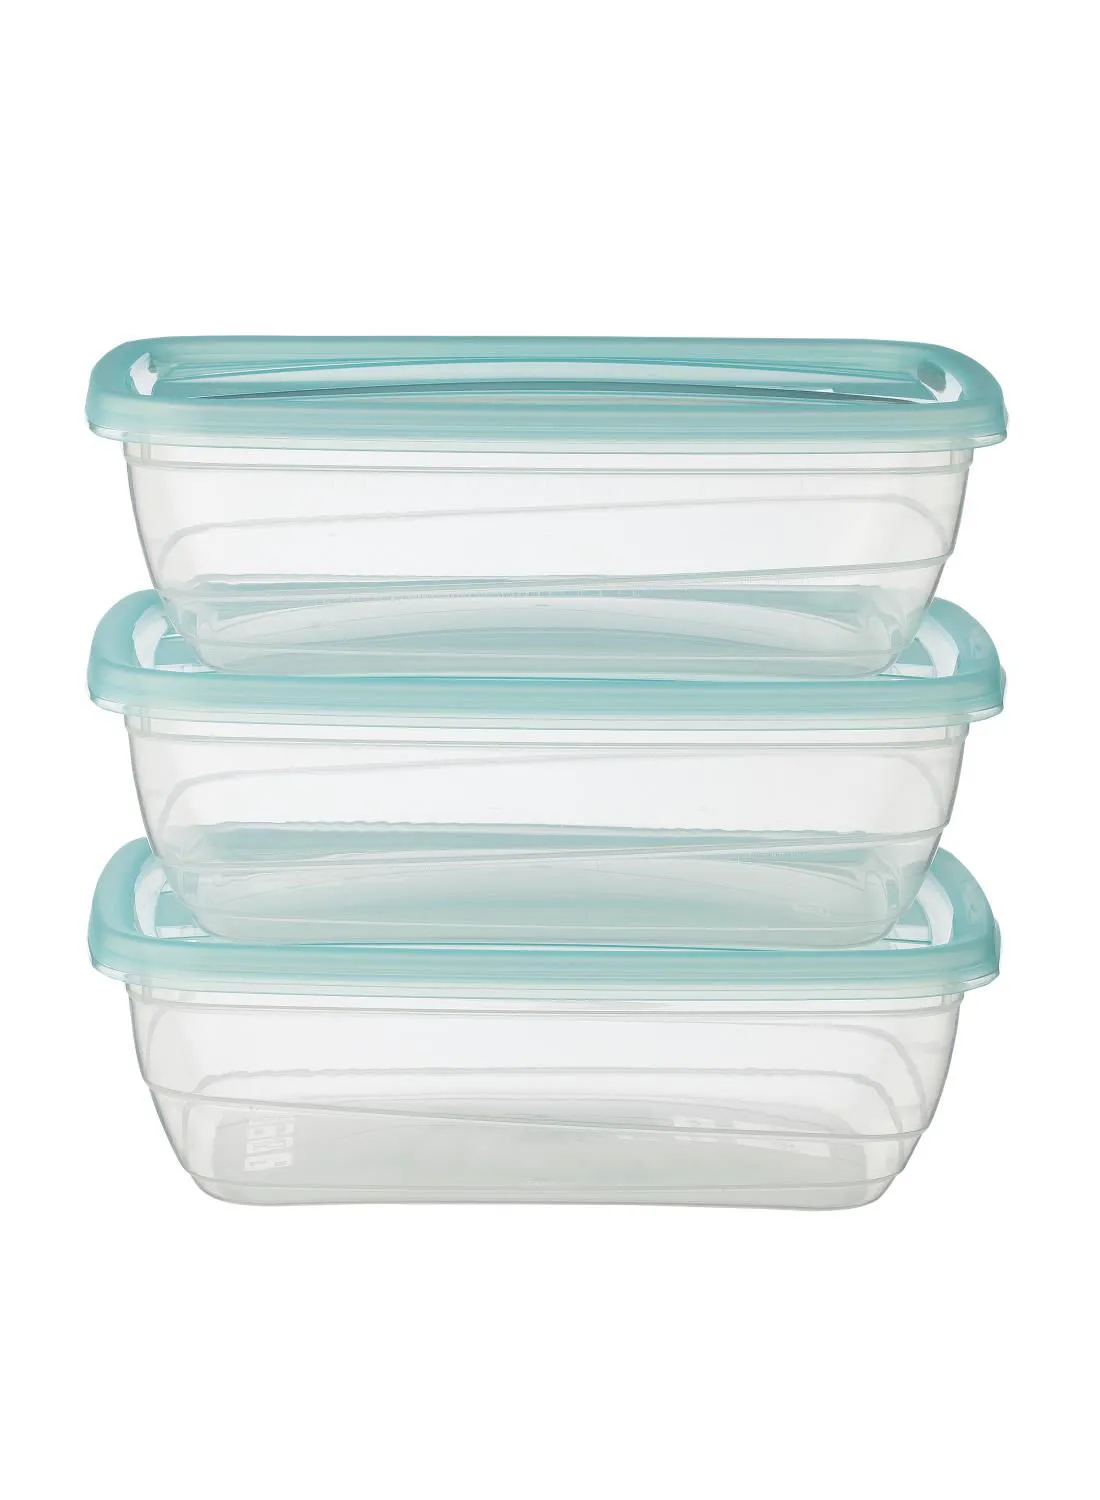 Hema Food Storage Box Clear/Blue 14x19x5.5centimeter